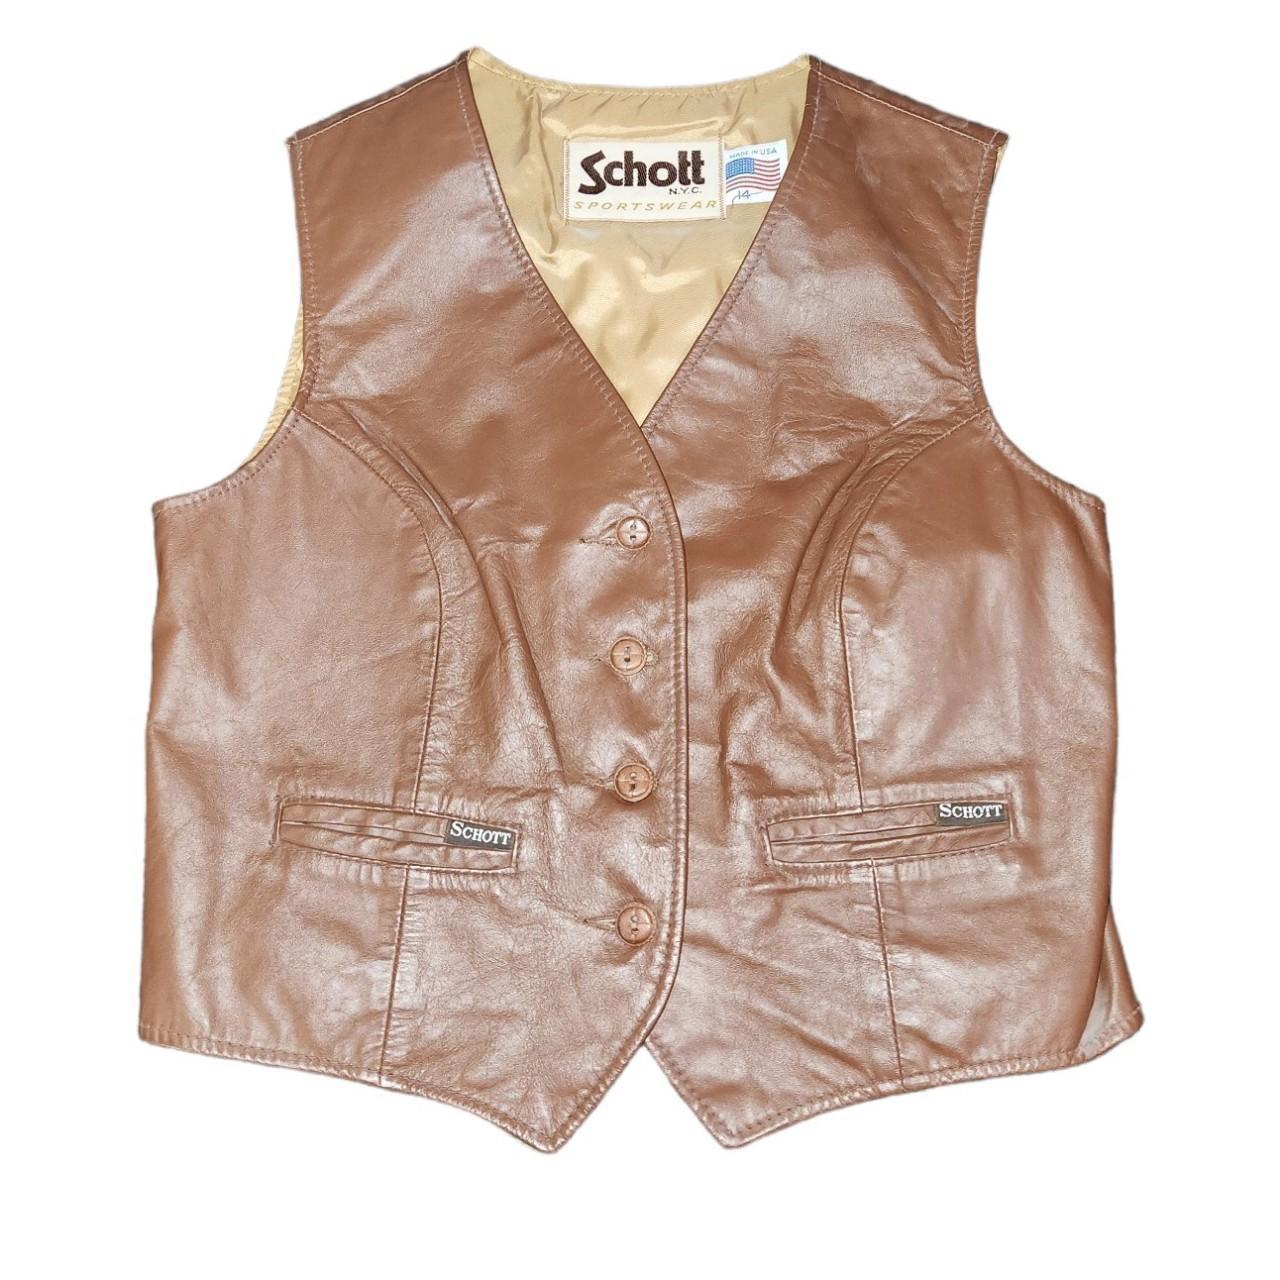 Schott Women's Gold and Brown Jacket